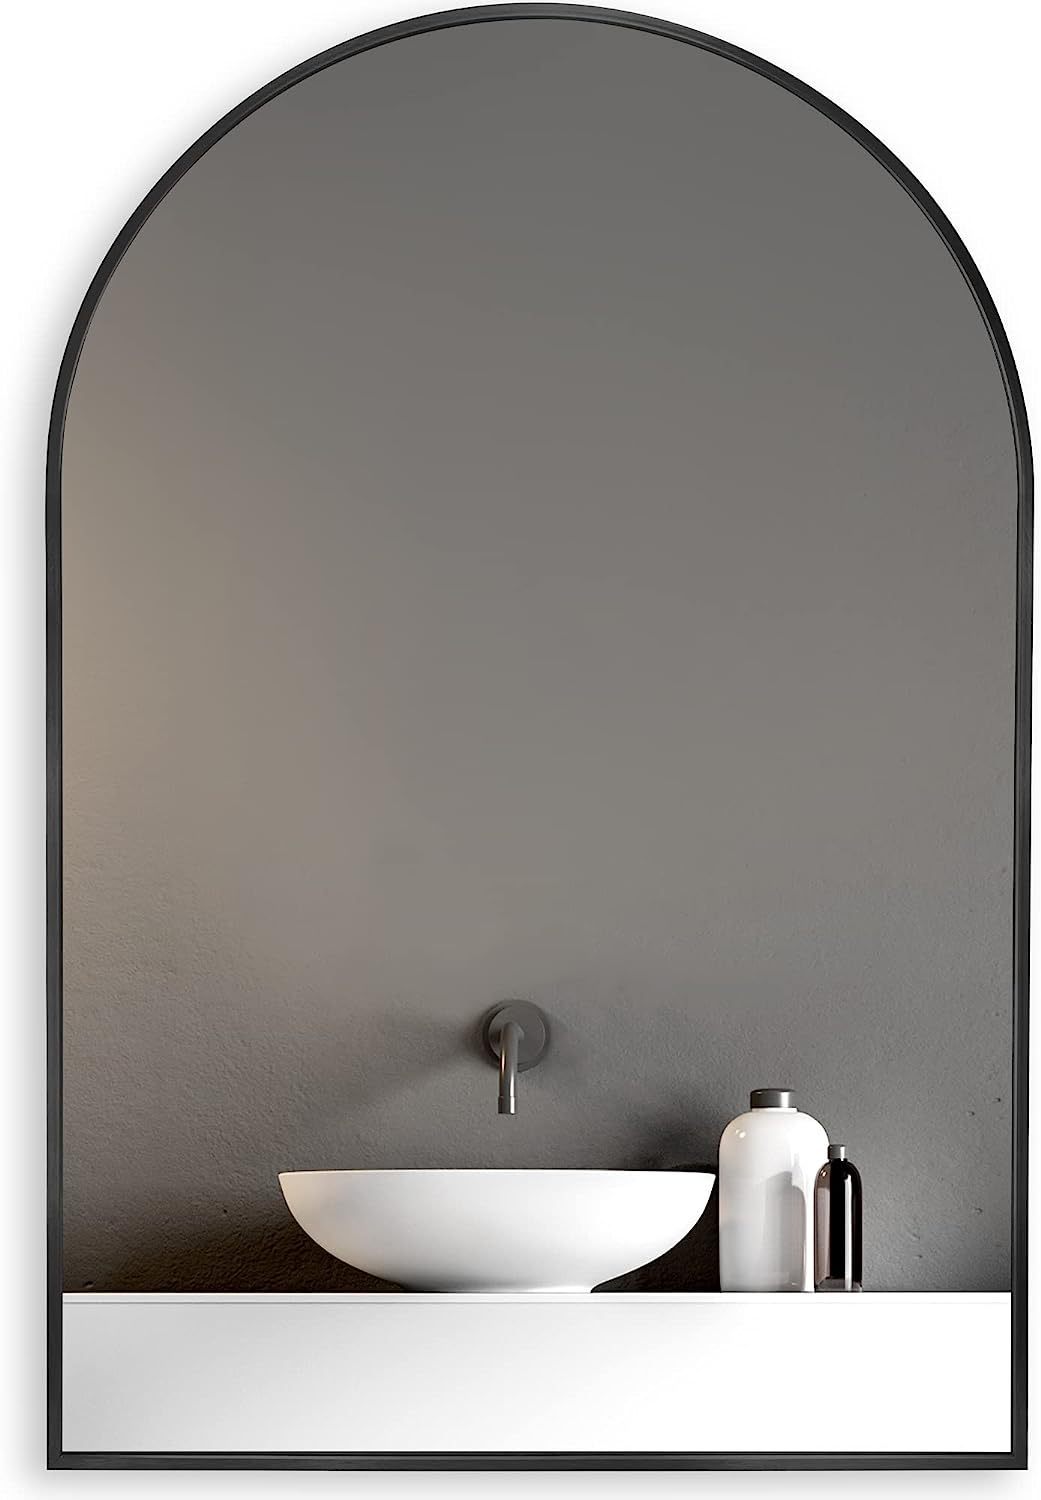 Wall Mirror 30"x20", Bathroom Mirror, Vanity Mirror, for Bathroom, Bedroom, Entryway, with Metal Frame, Modern & Contemporary Arch Top Wall Mirror (Black)